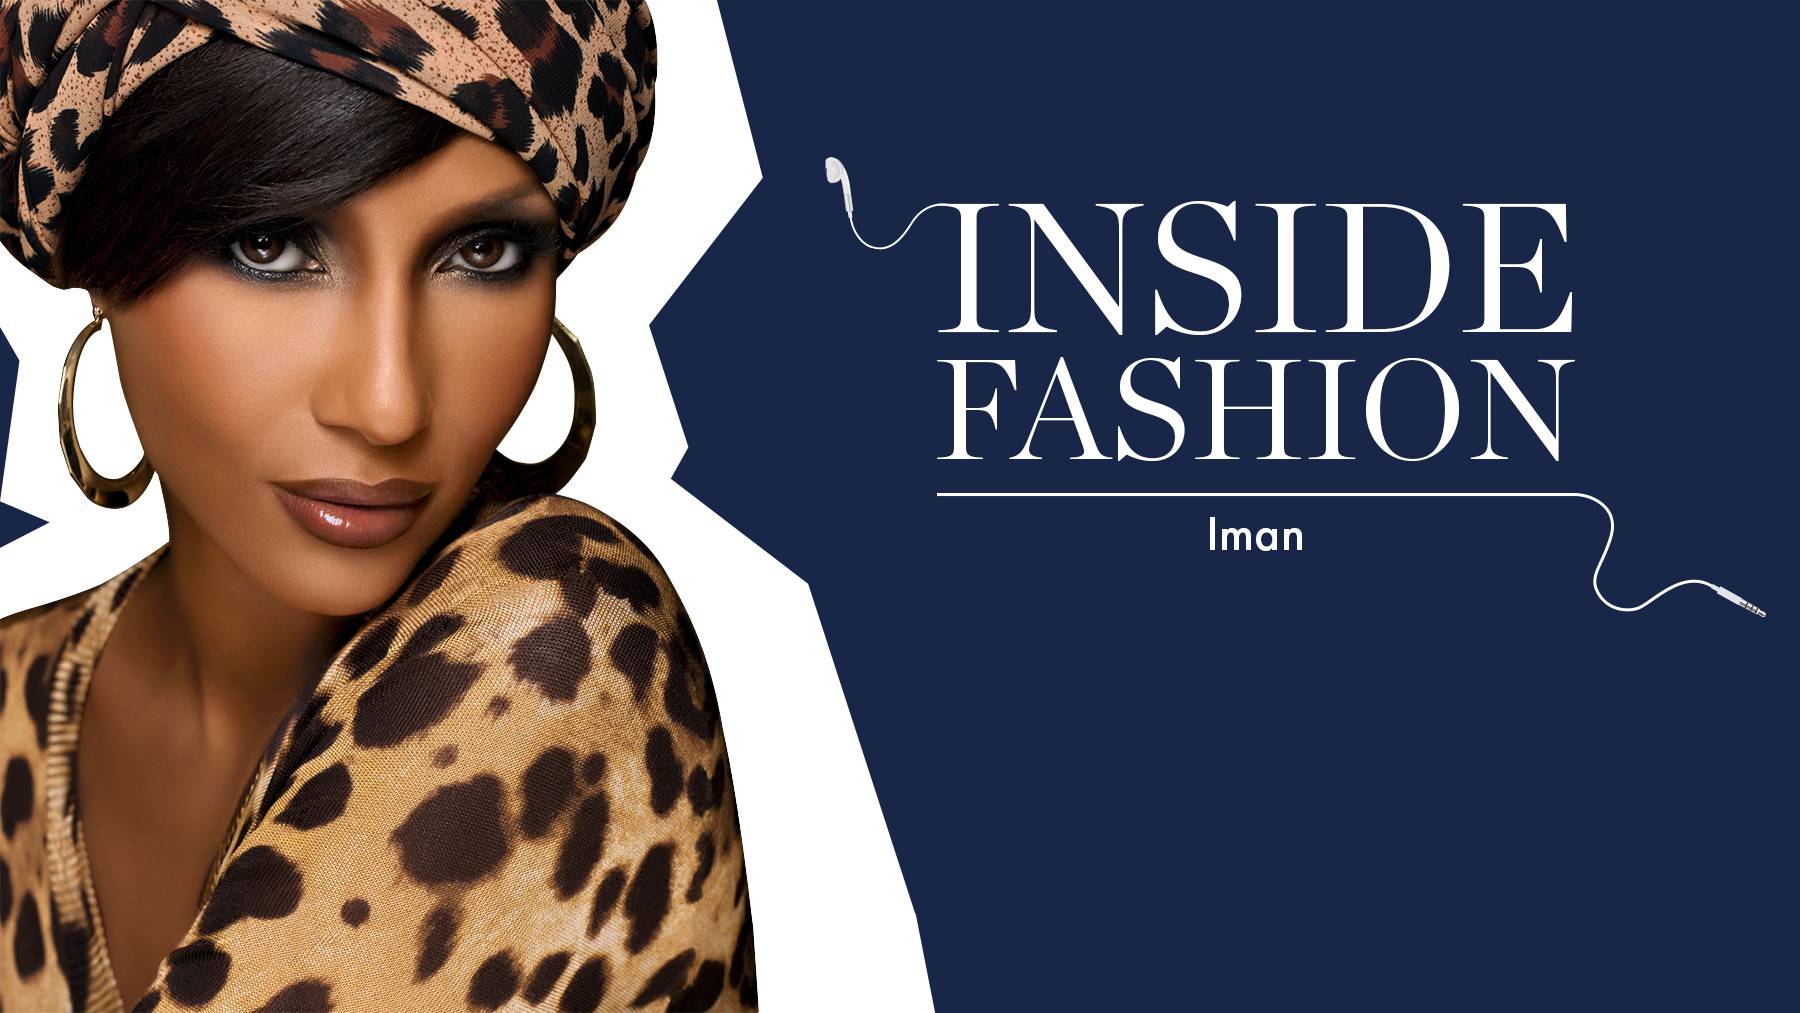 Inside Fashion Iman Tim Blanks Fashion